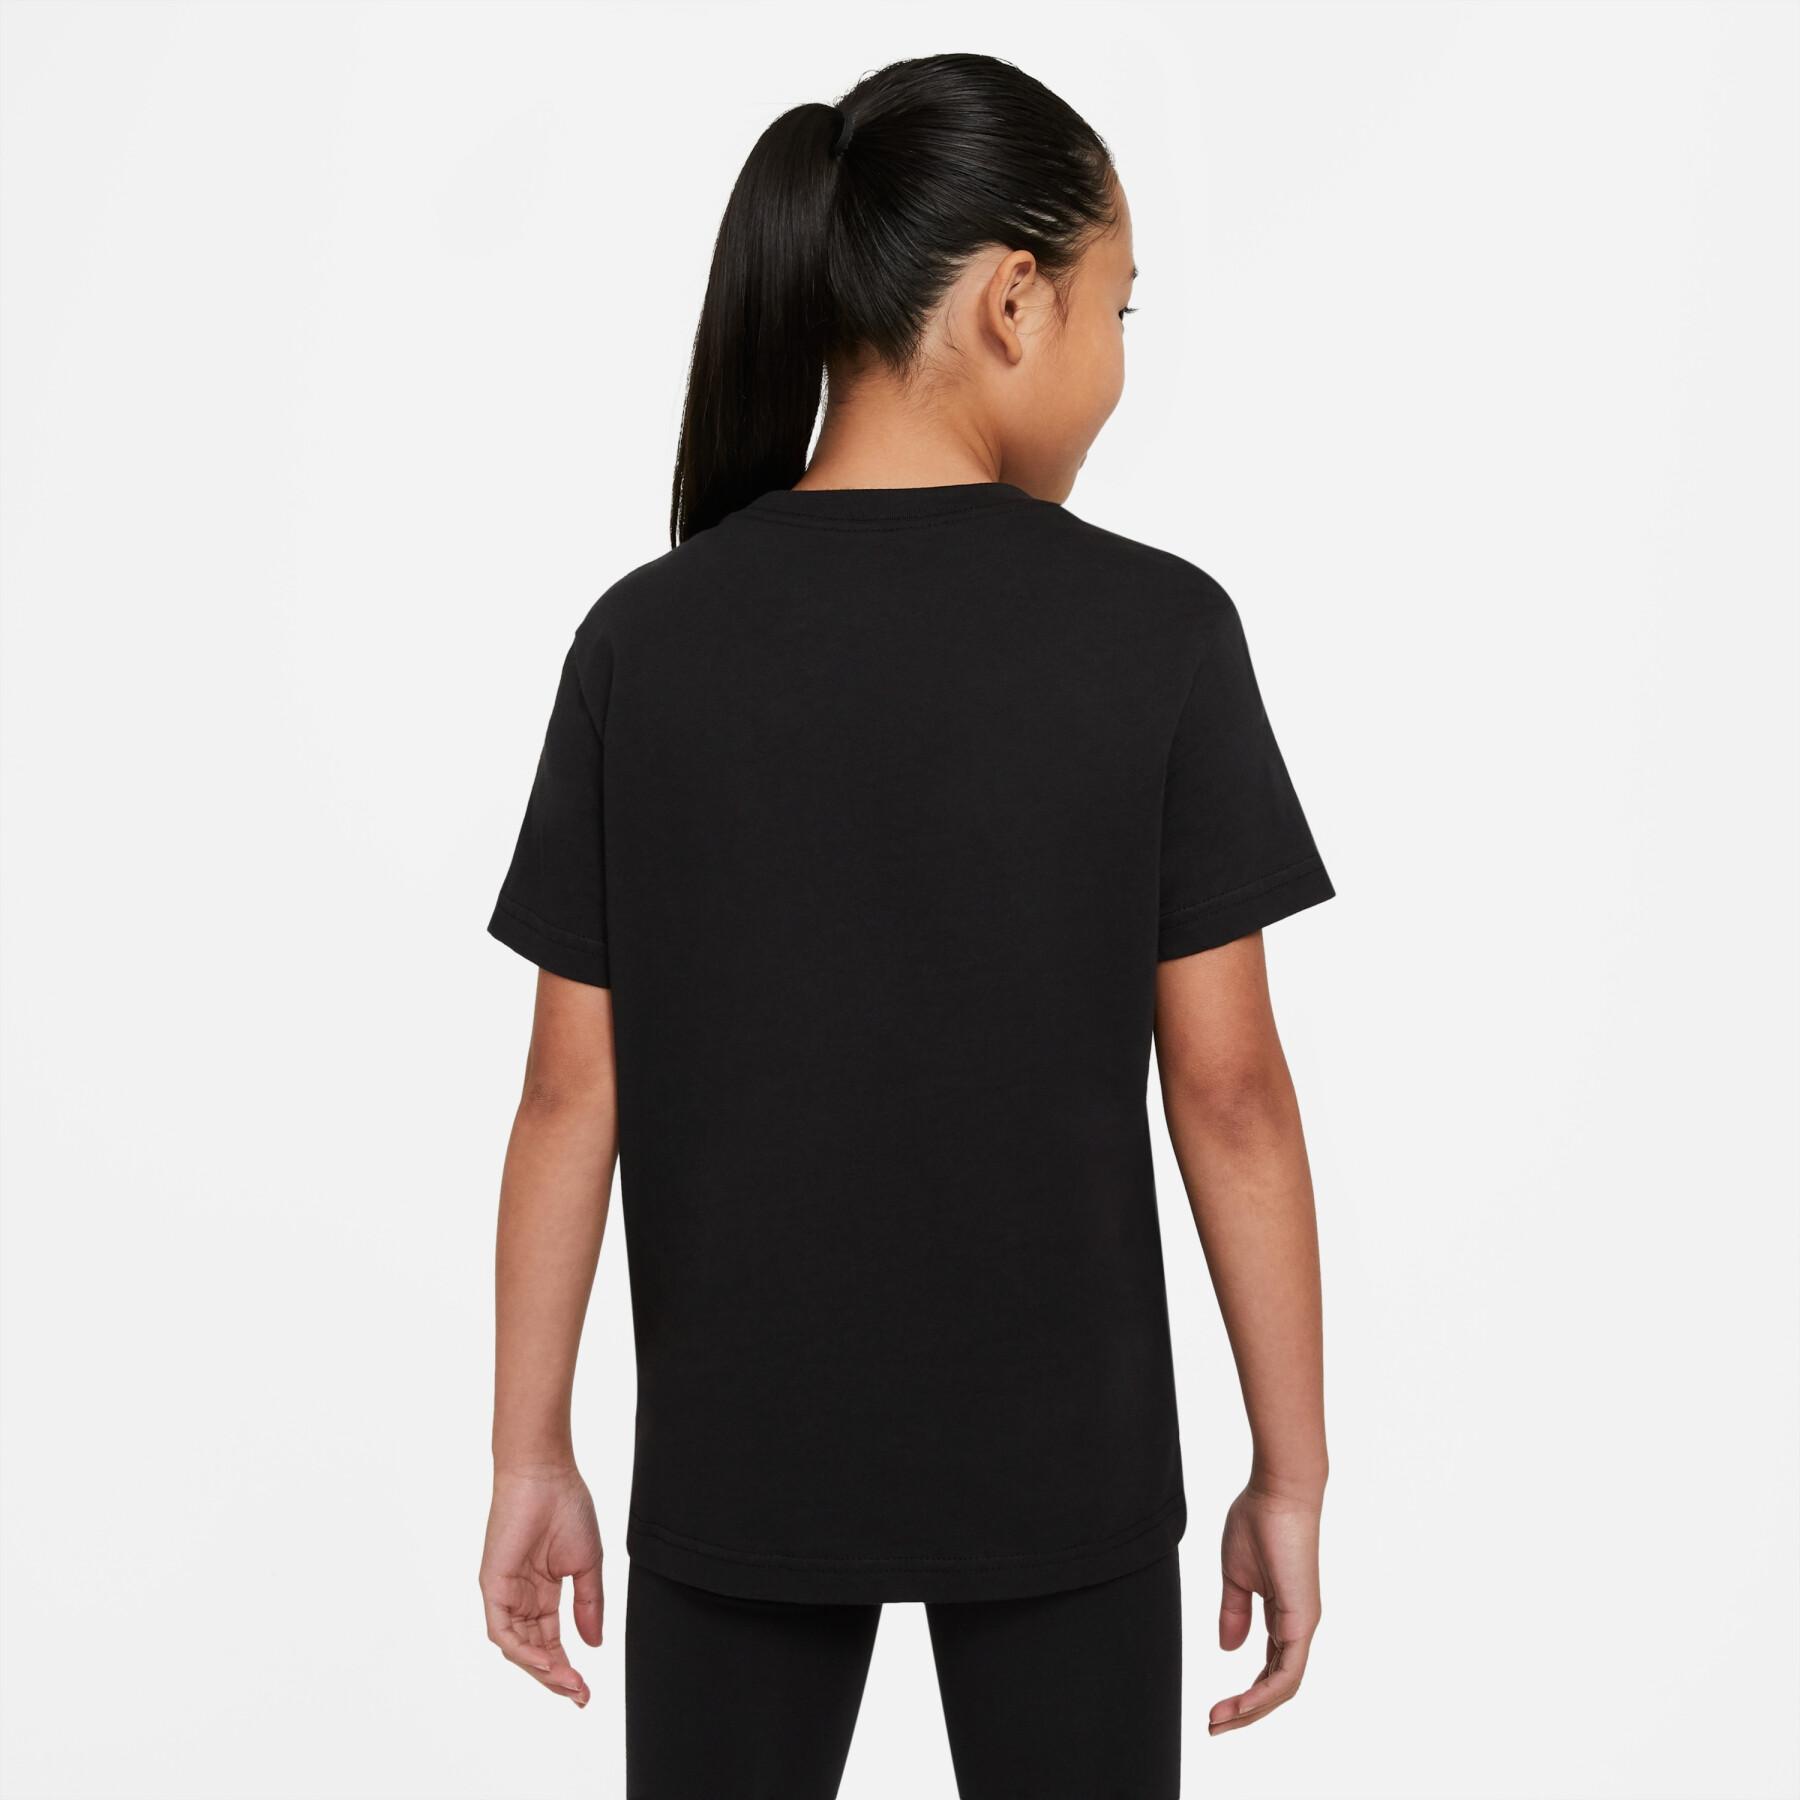 Meisjes-T-shirt Nike Sportswear